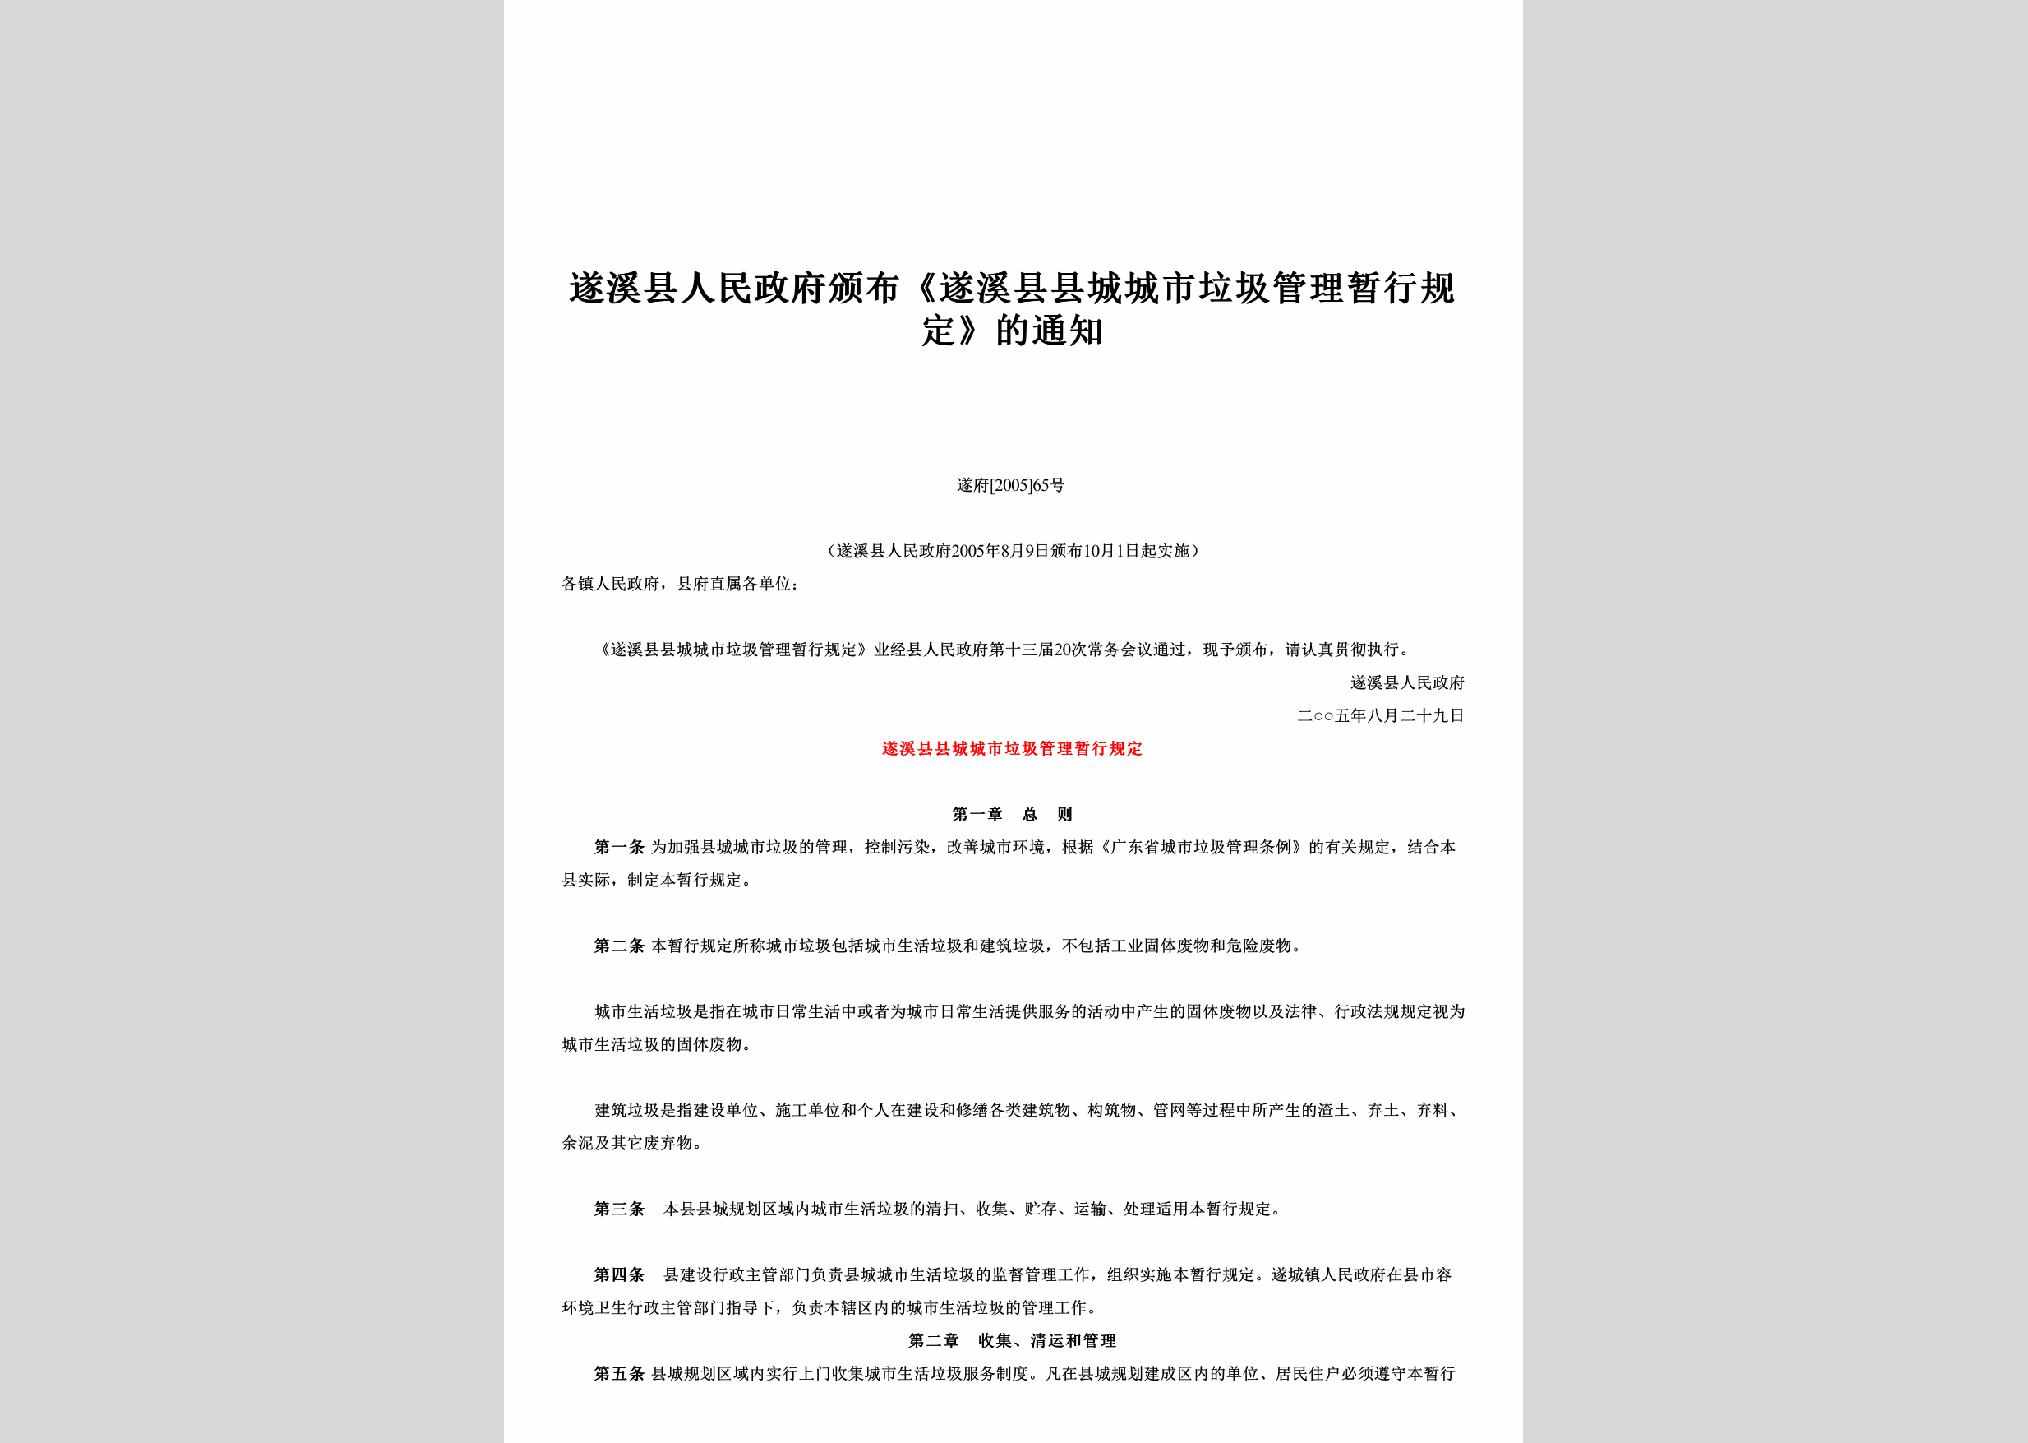 遂府[2005]65号：颁布《遂溪县县城城市垃圾管理暂行规定》的通知